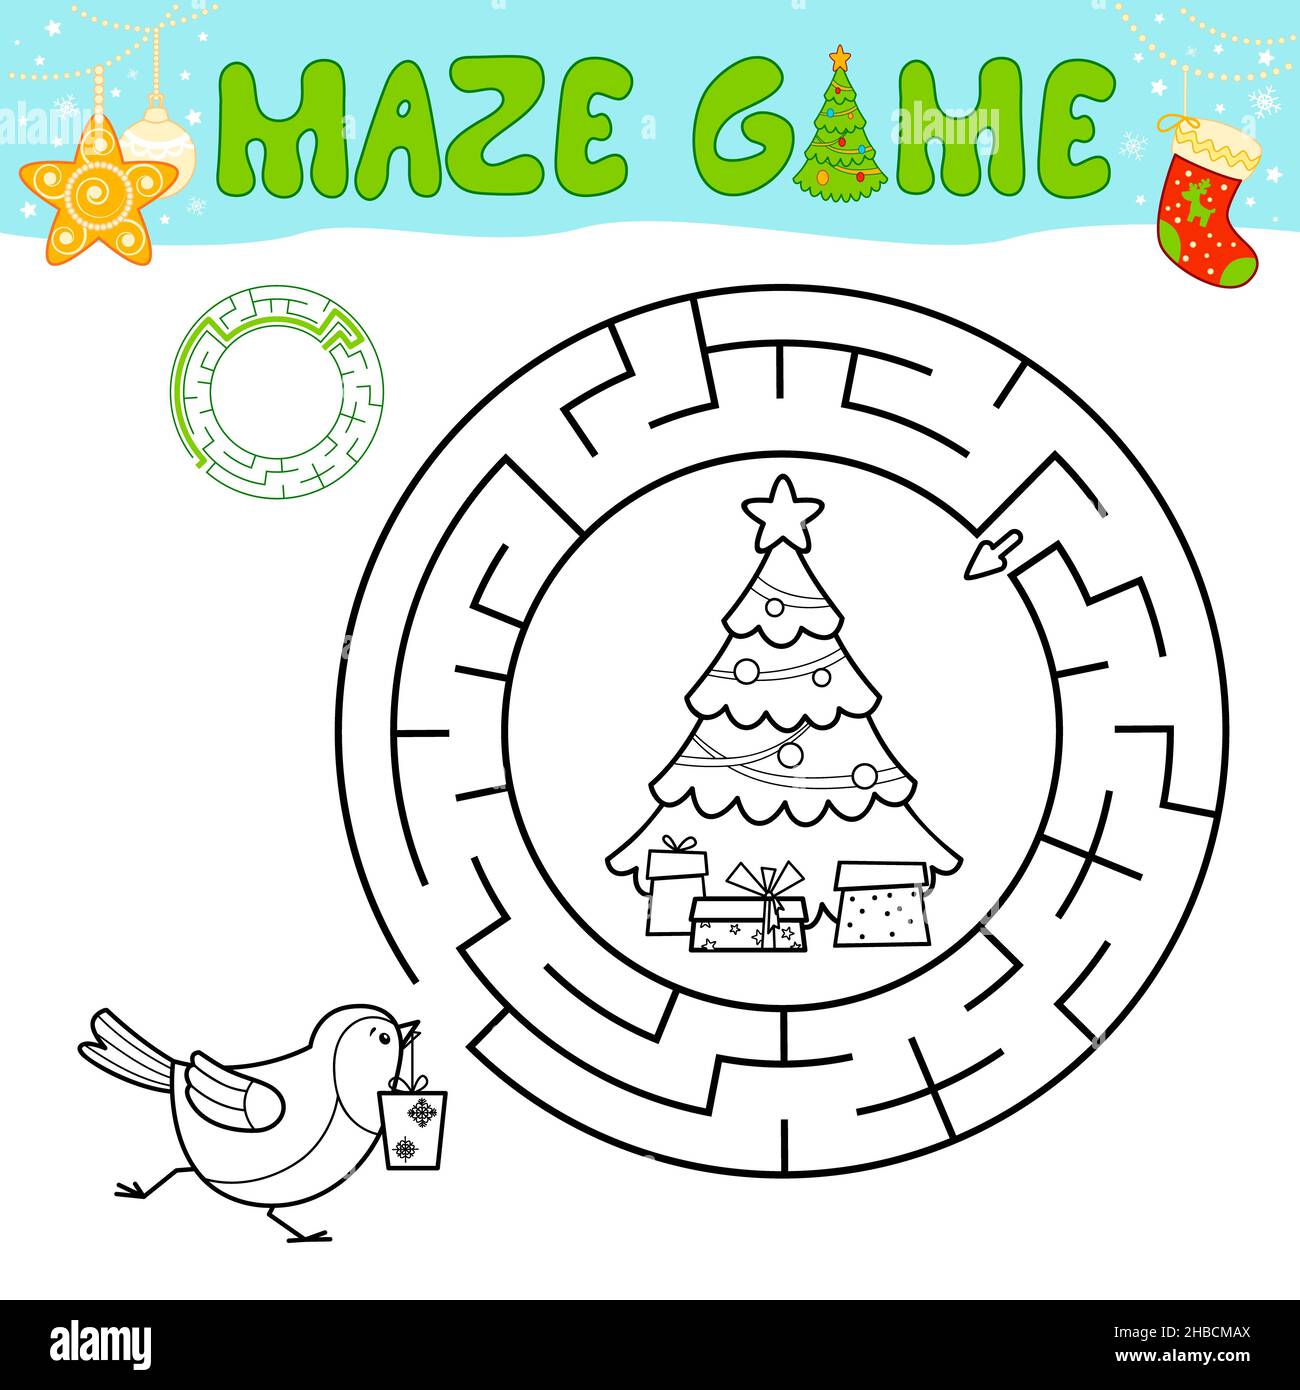 Weihnachten schwarz und weiß Labyrinth Puzzle-Spiel für Kinder. Skizzieren Kreis Labyrinth oder Labyrinth-Spiel mit Christmas Bird. Stockfoto